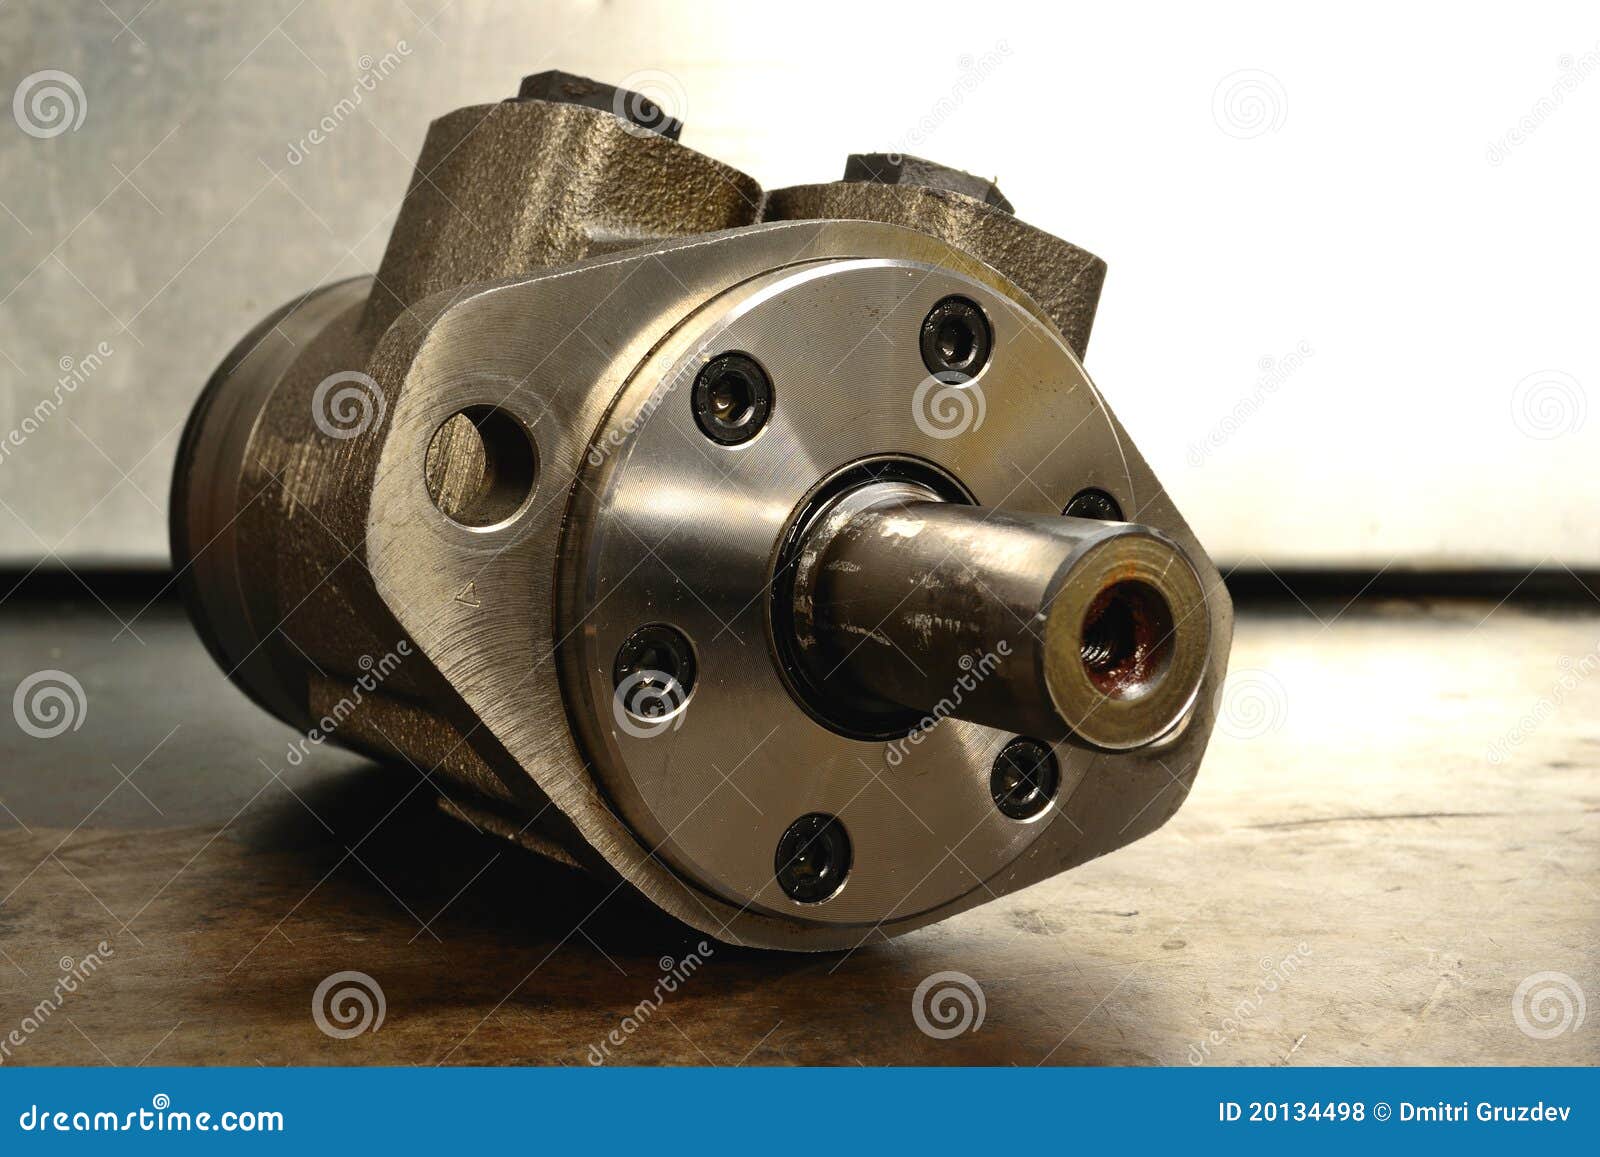 hydraulic pumpmotor